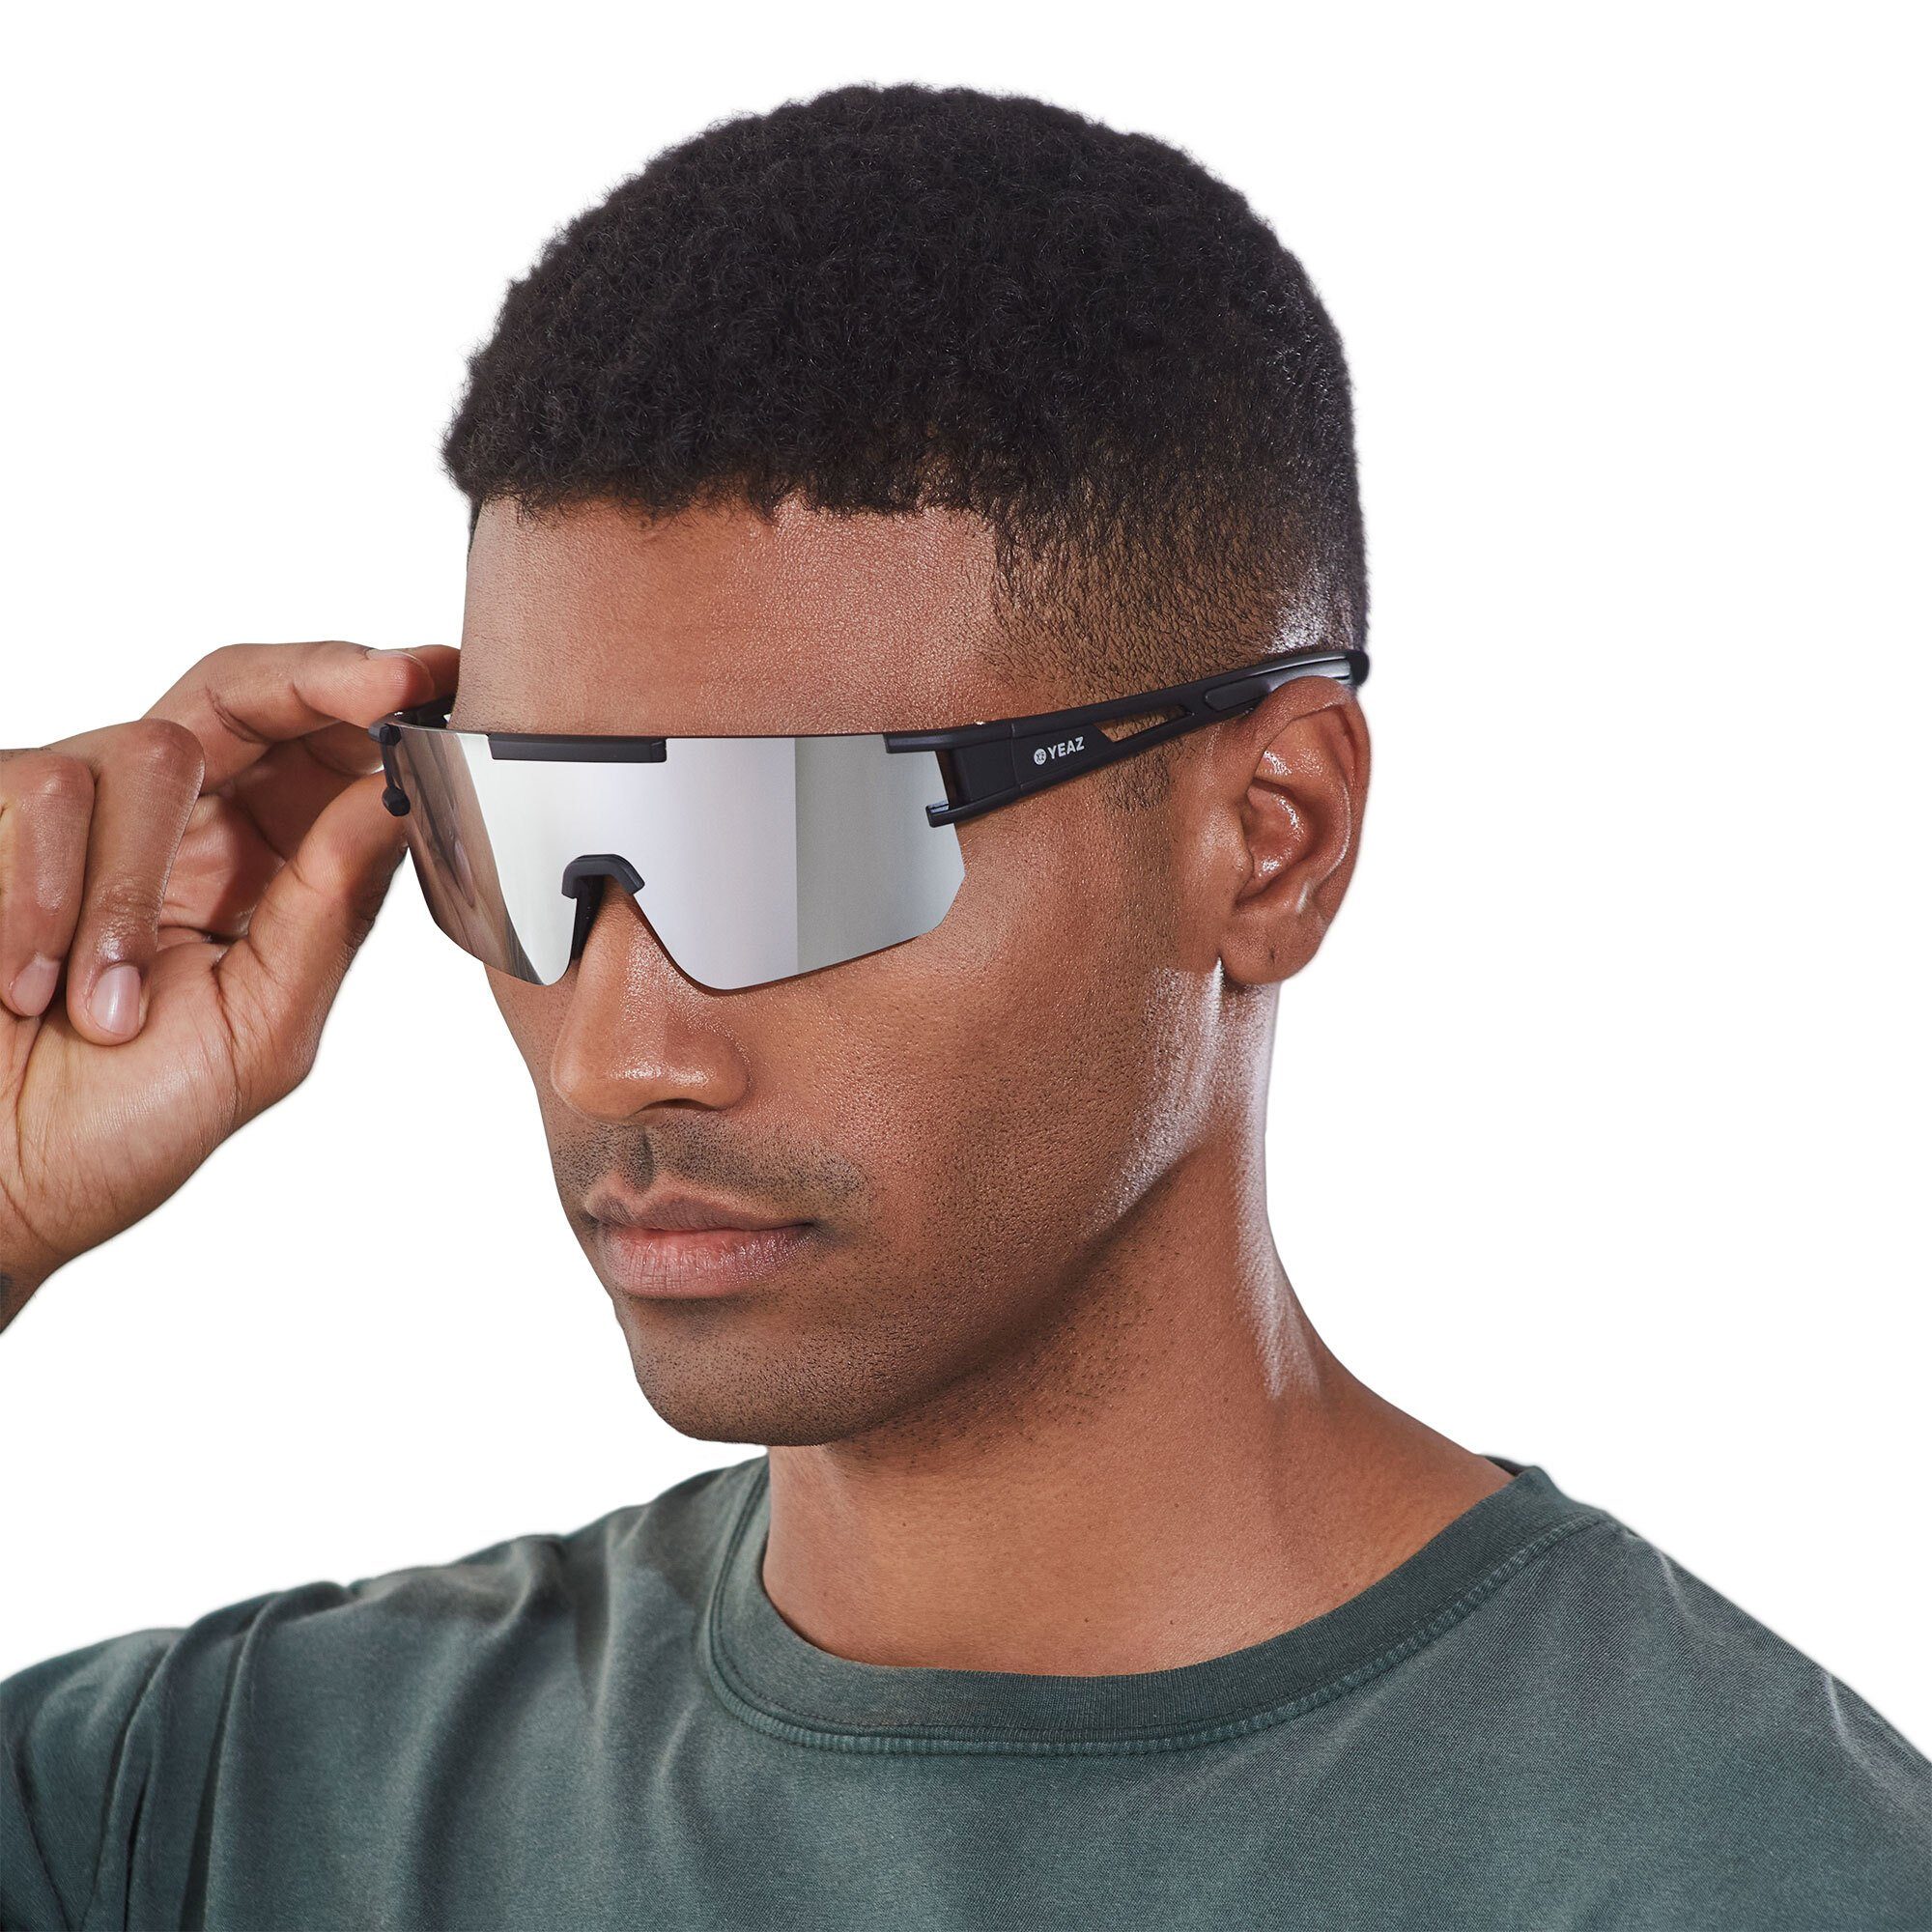 YEAZ Sportbrille SUNSPARK sport-sonnenbrille black/silver mirror, Guter Schutz bei optimierter Sicht